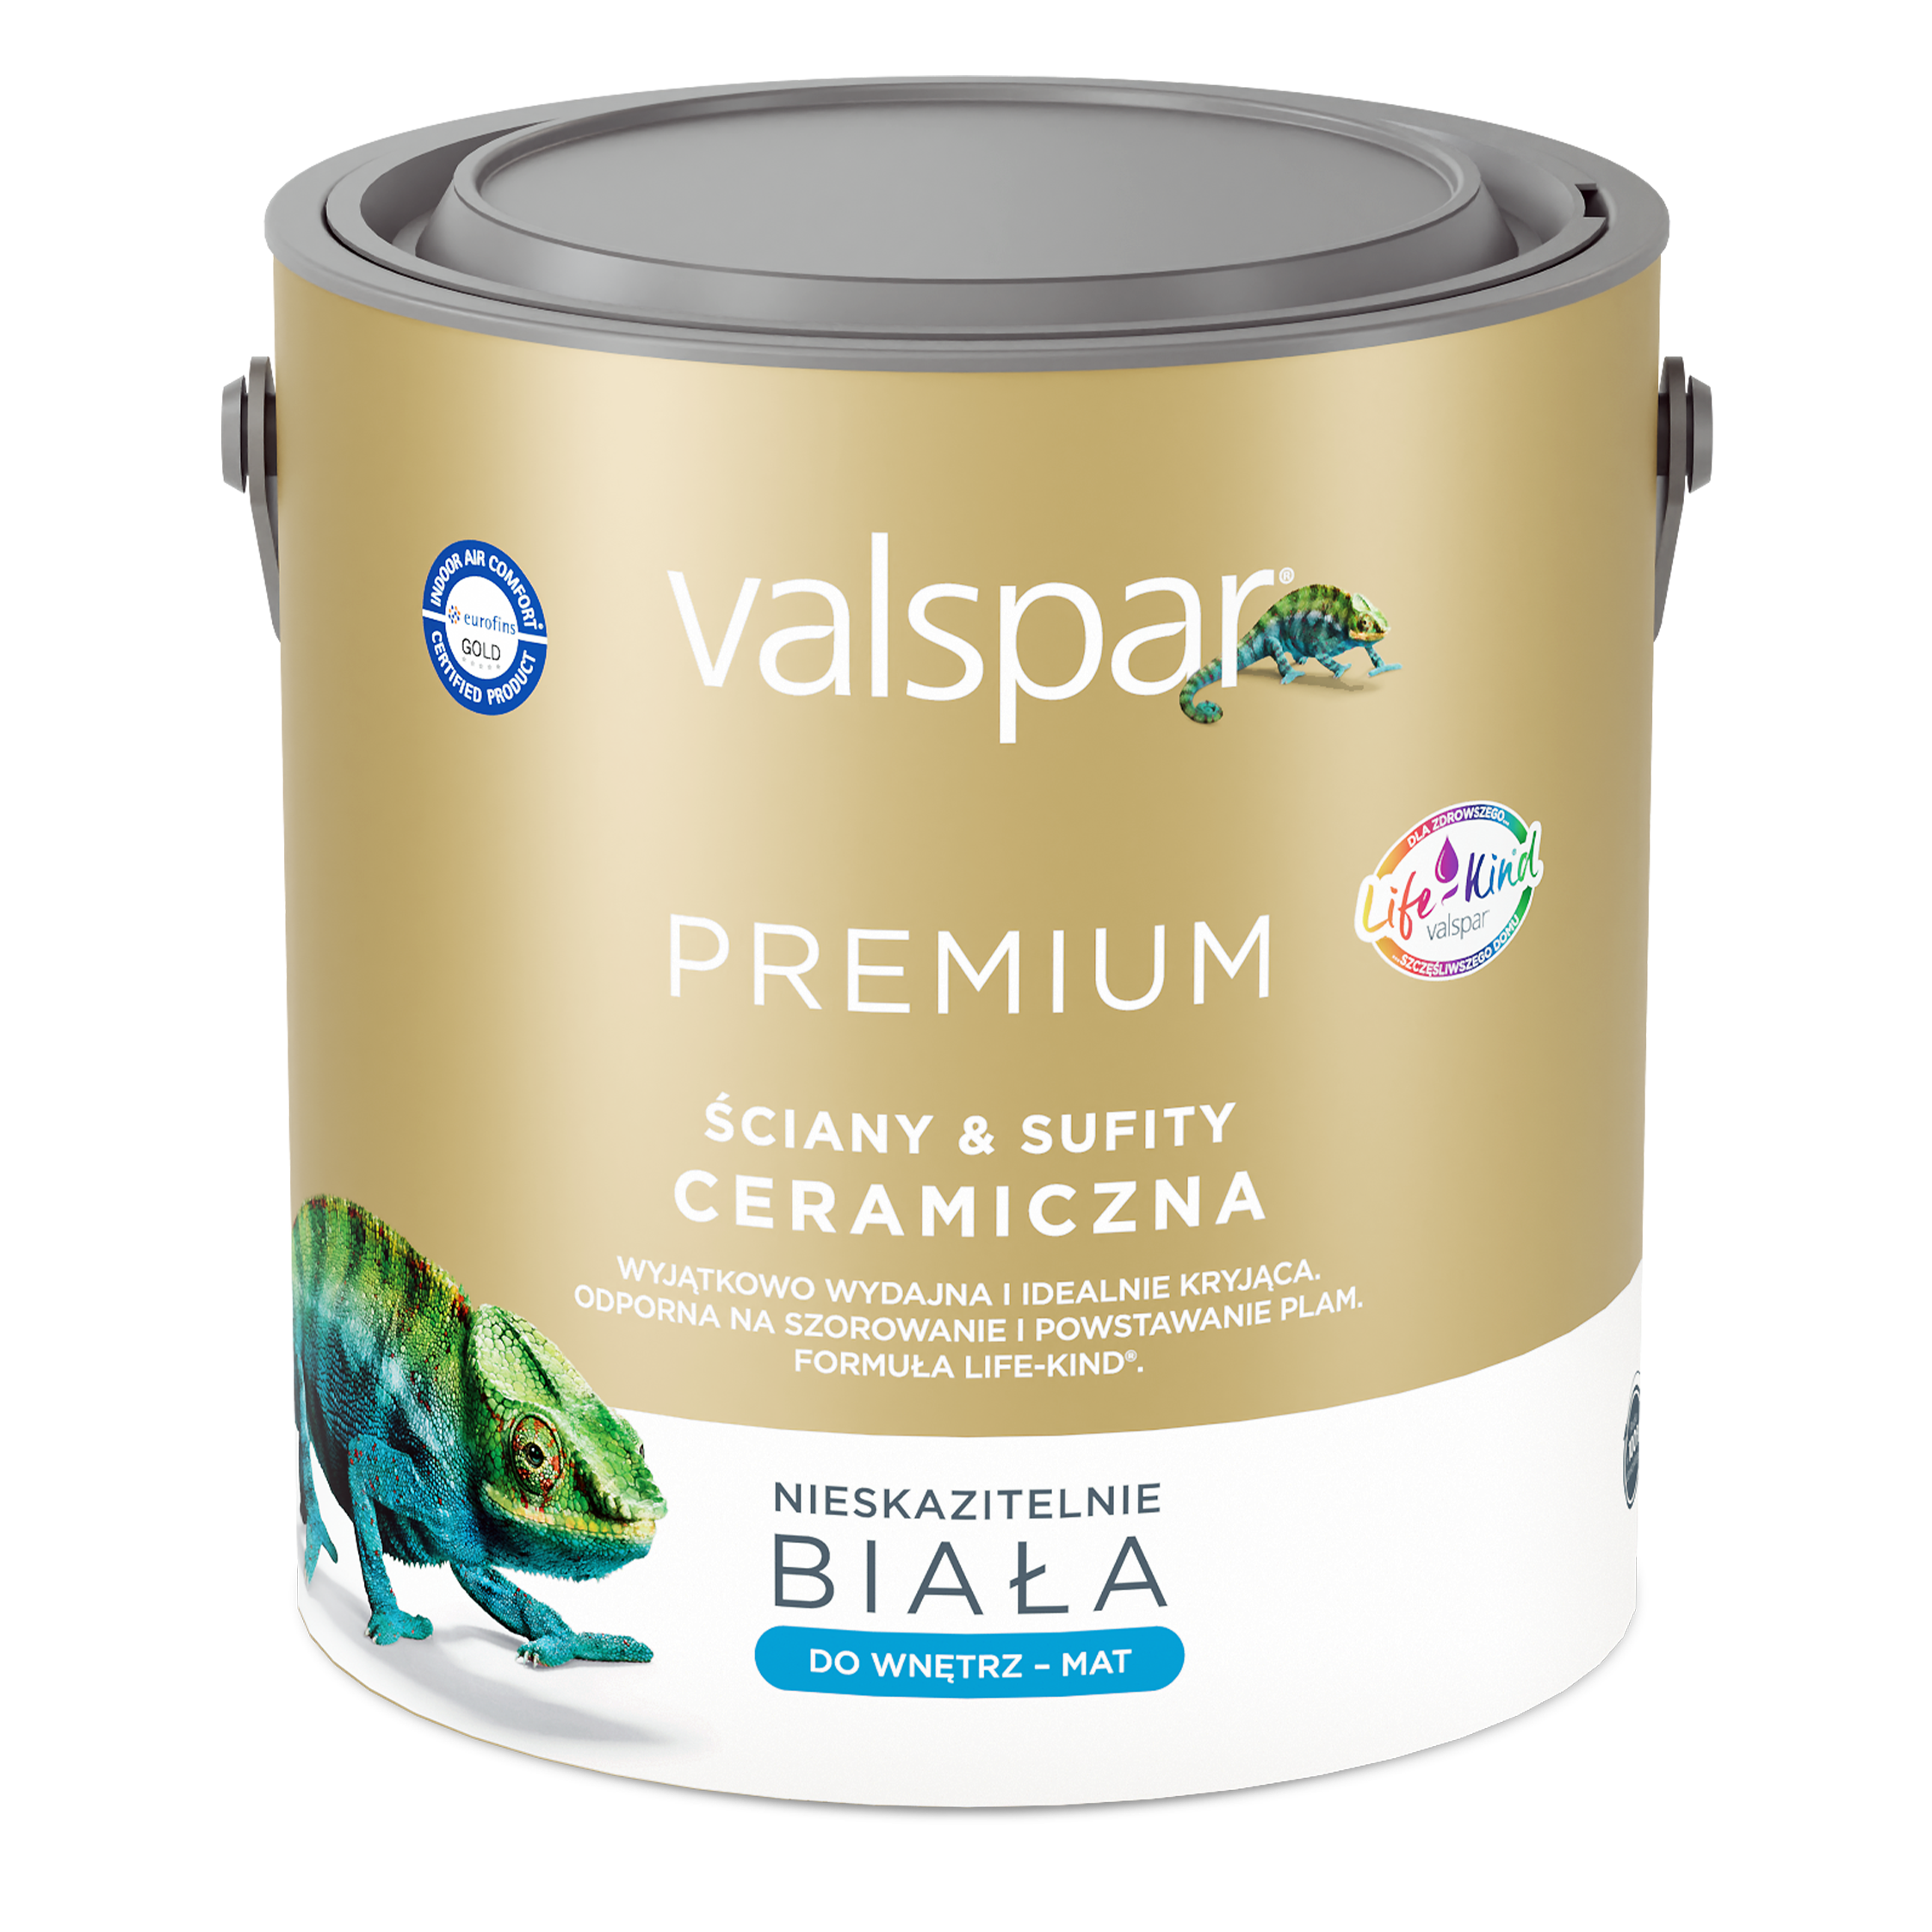 VALSPAR Premium Ceramiczna Farba Biała Ściany i Sufity 